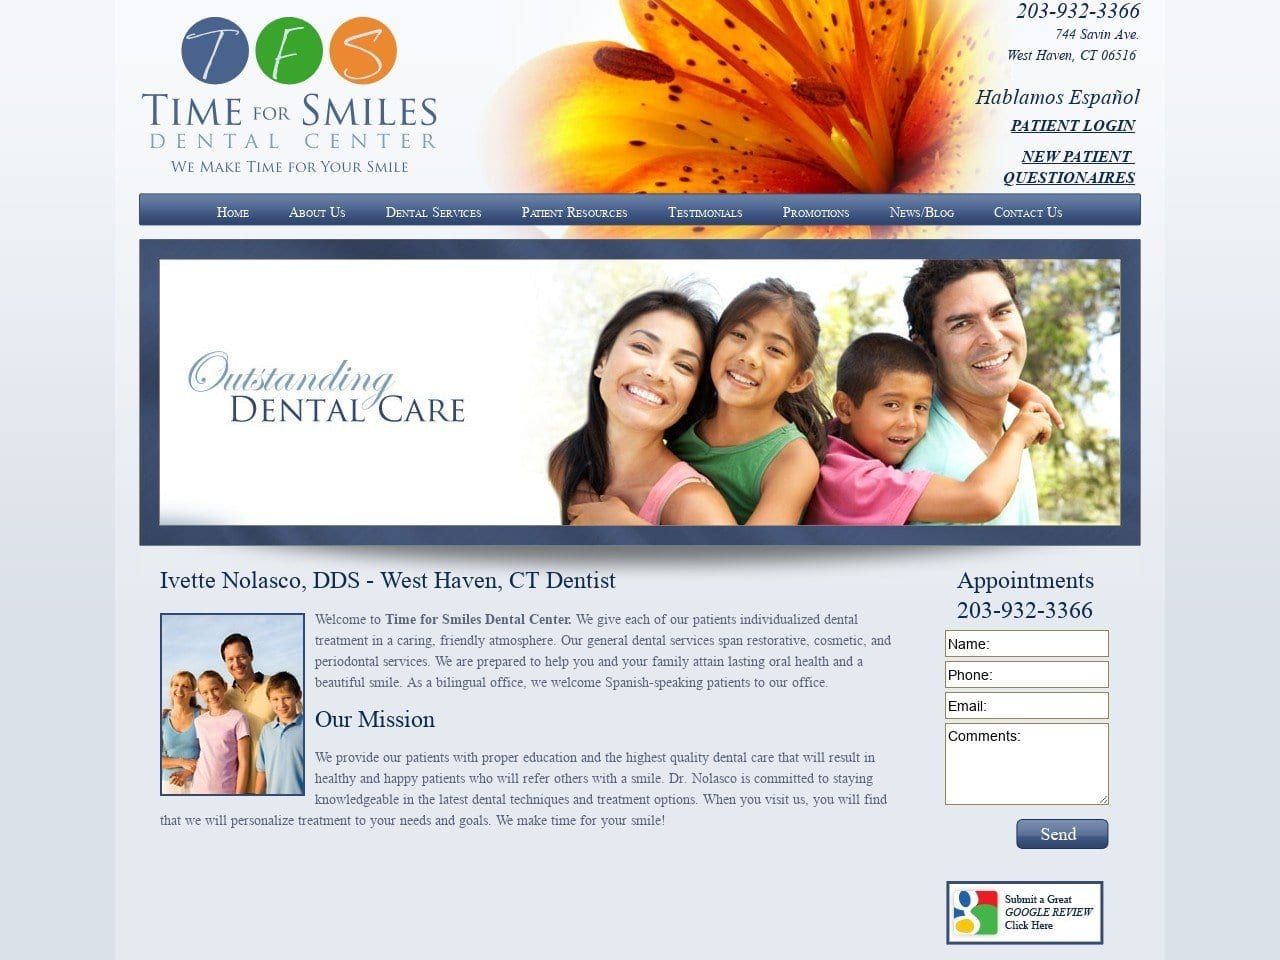 Time For Smiles Dental Center Website Screenshot from westhavenctdentist.com